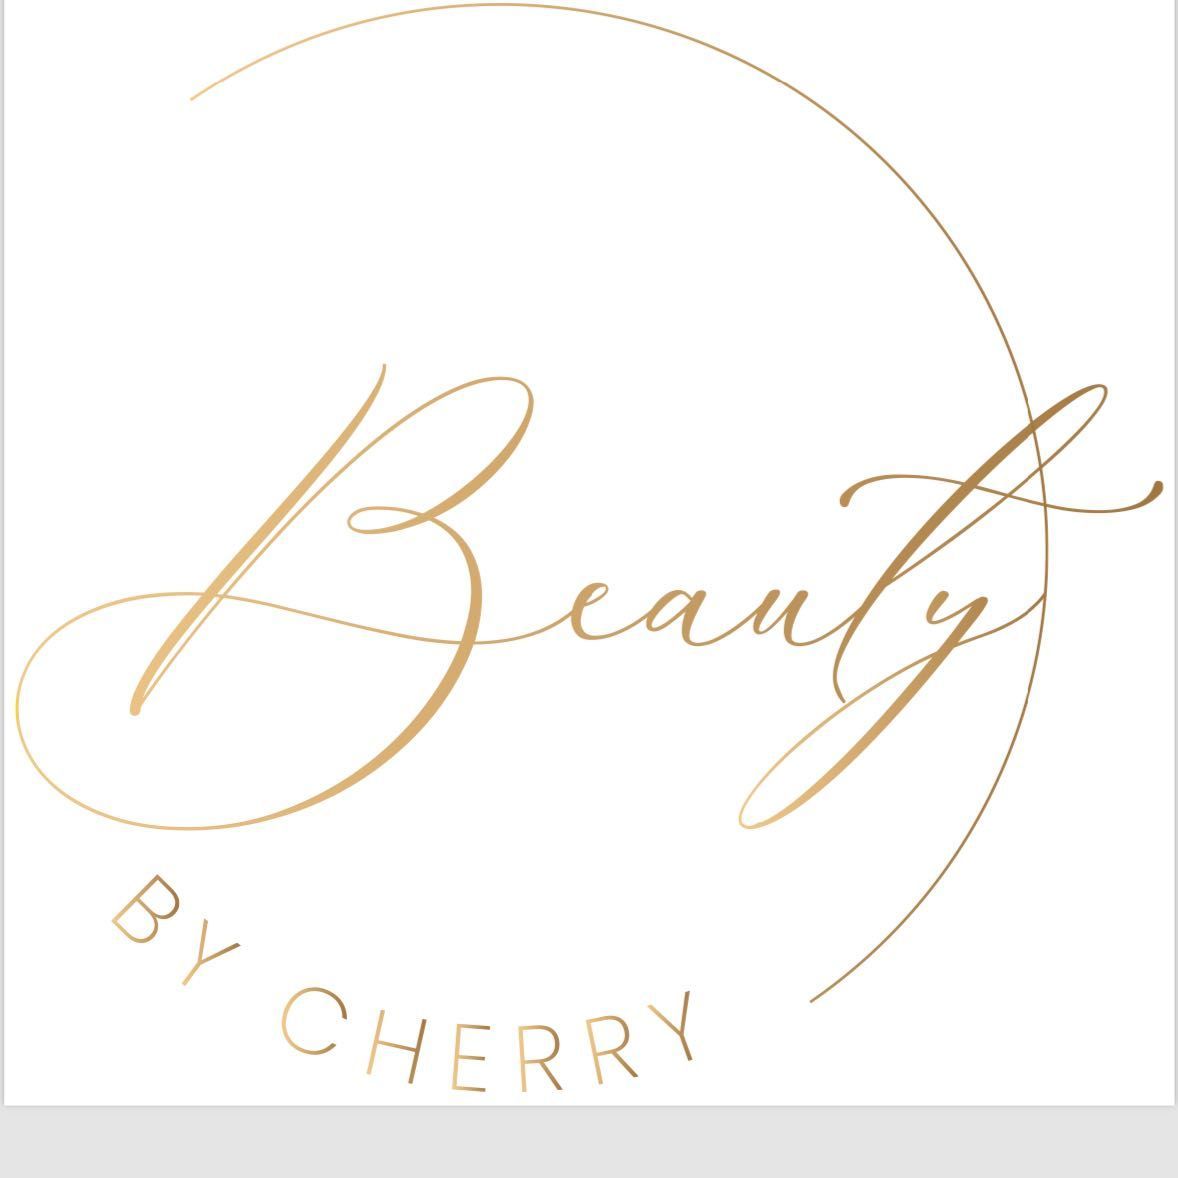 Beauty by Cherry, Rychtalska 15, U2, 50-304, Wrocław, Psie Pole